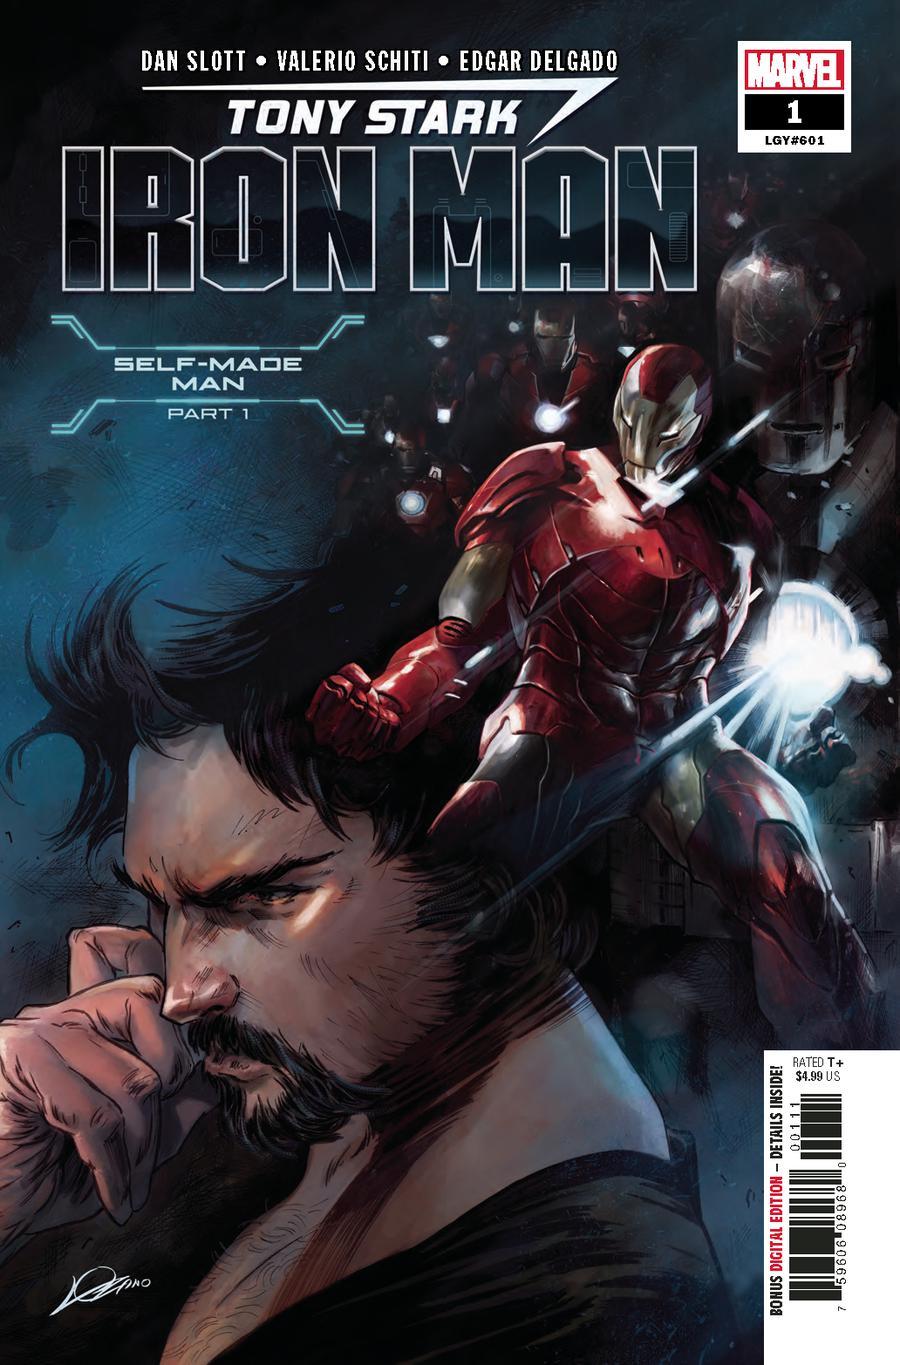 Tony Stark Iron Man Vol. 1 #1